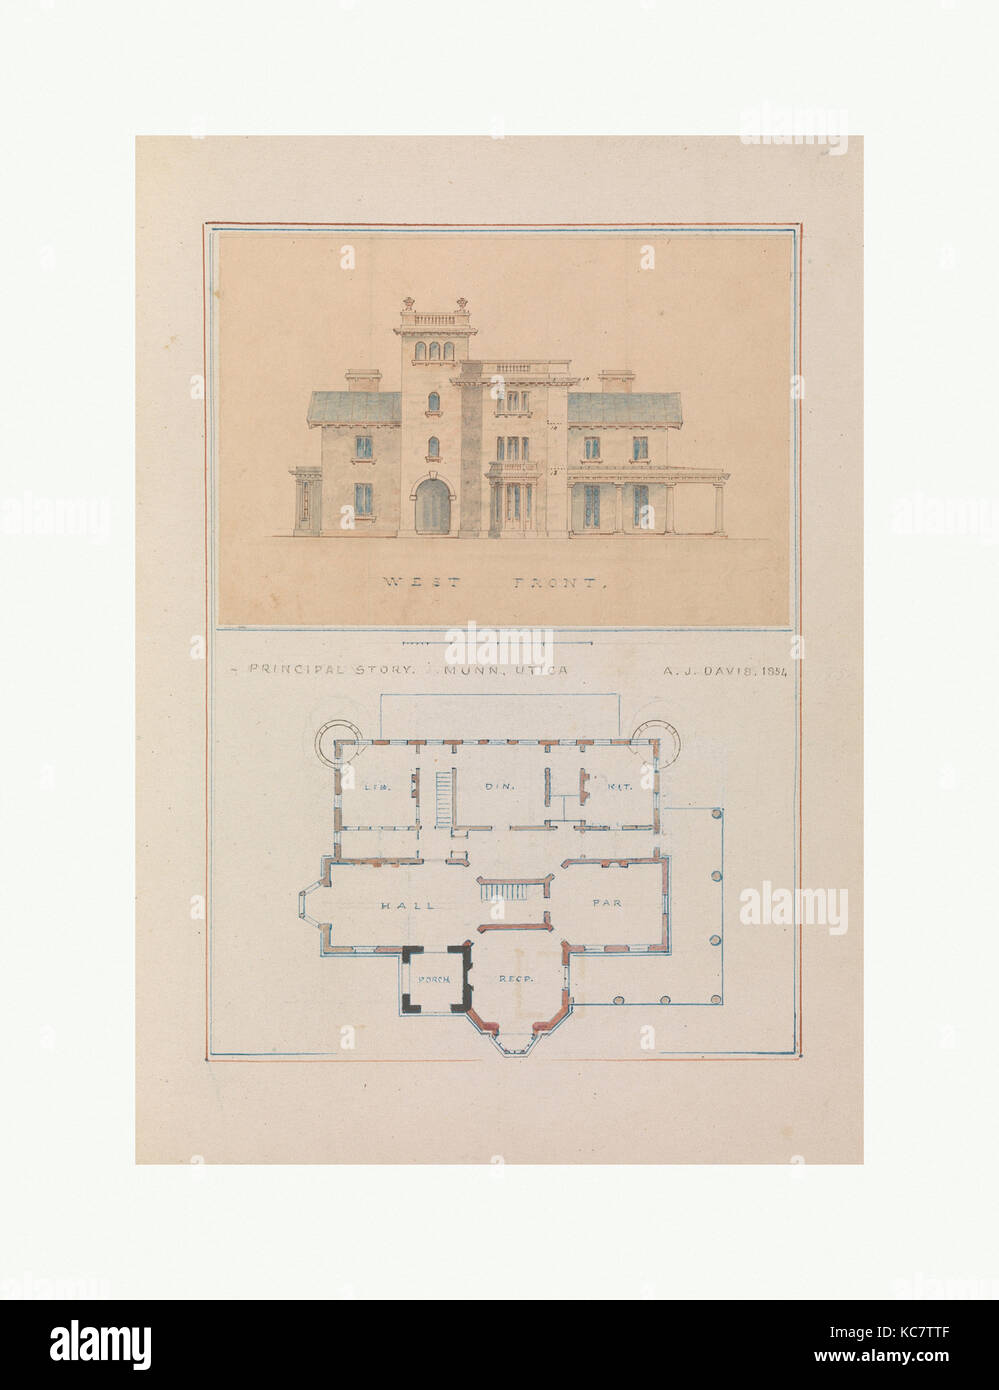 West Front- und wichtigsten Grundriss von John Munn Haus, Utica, New York, Alexander Jackson Davis, 1854 Stockfoto